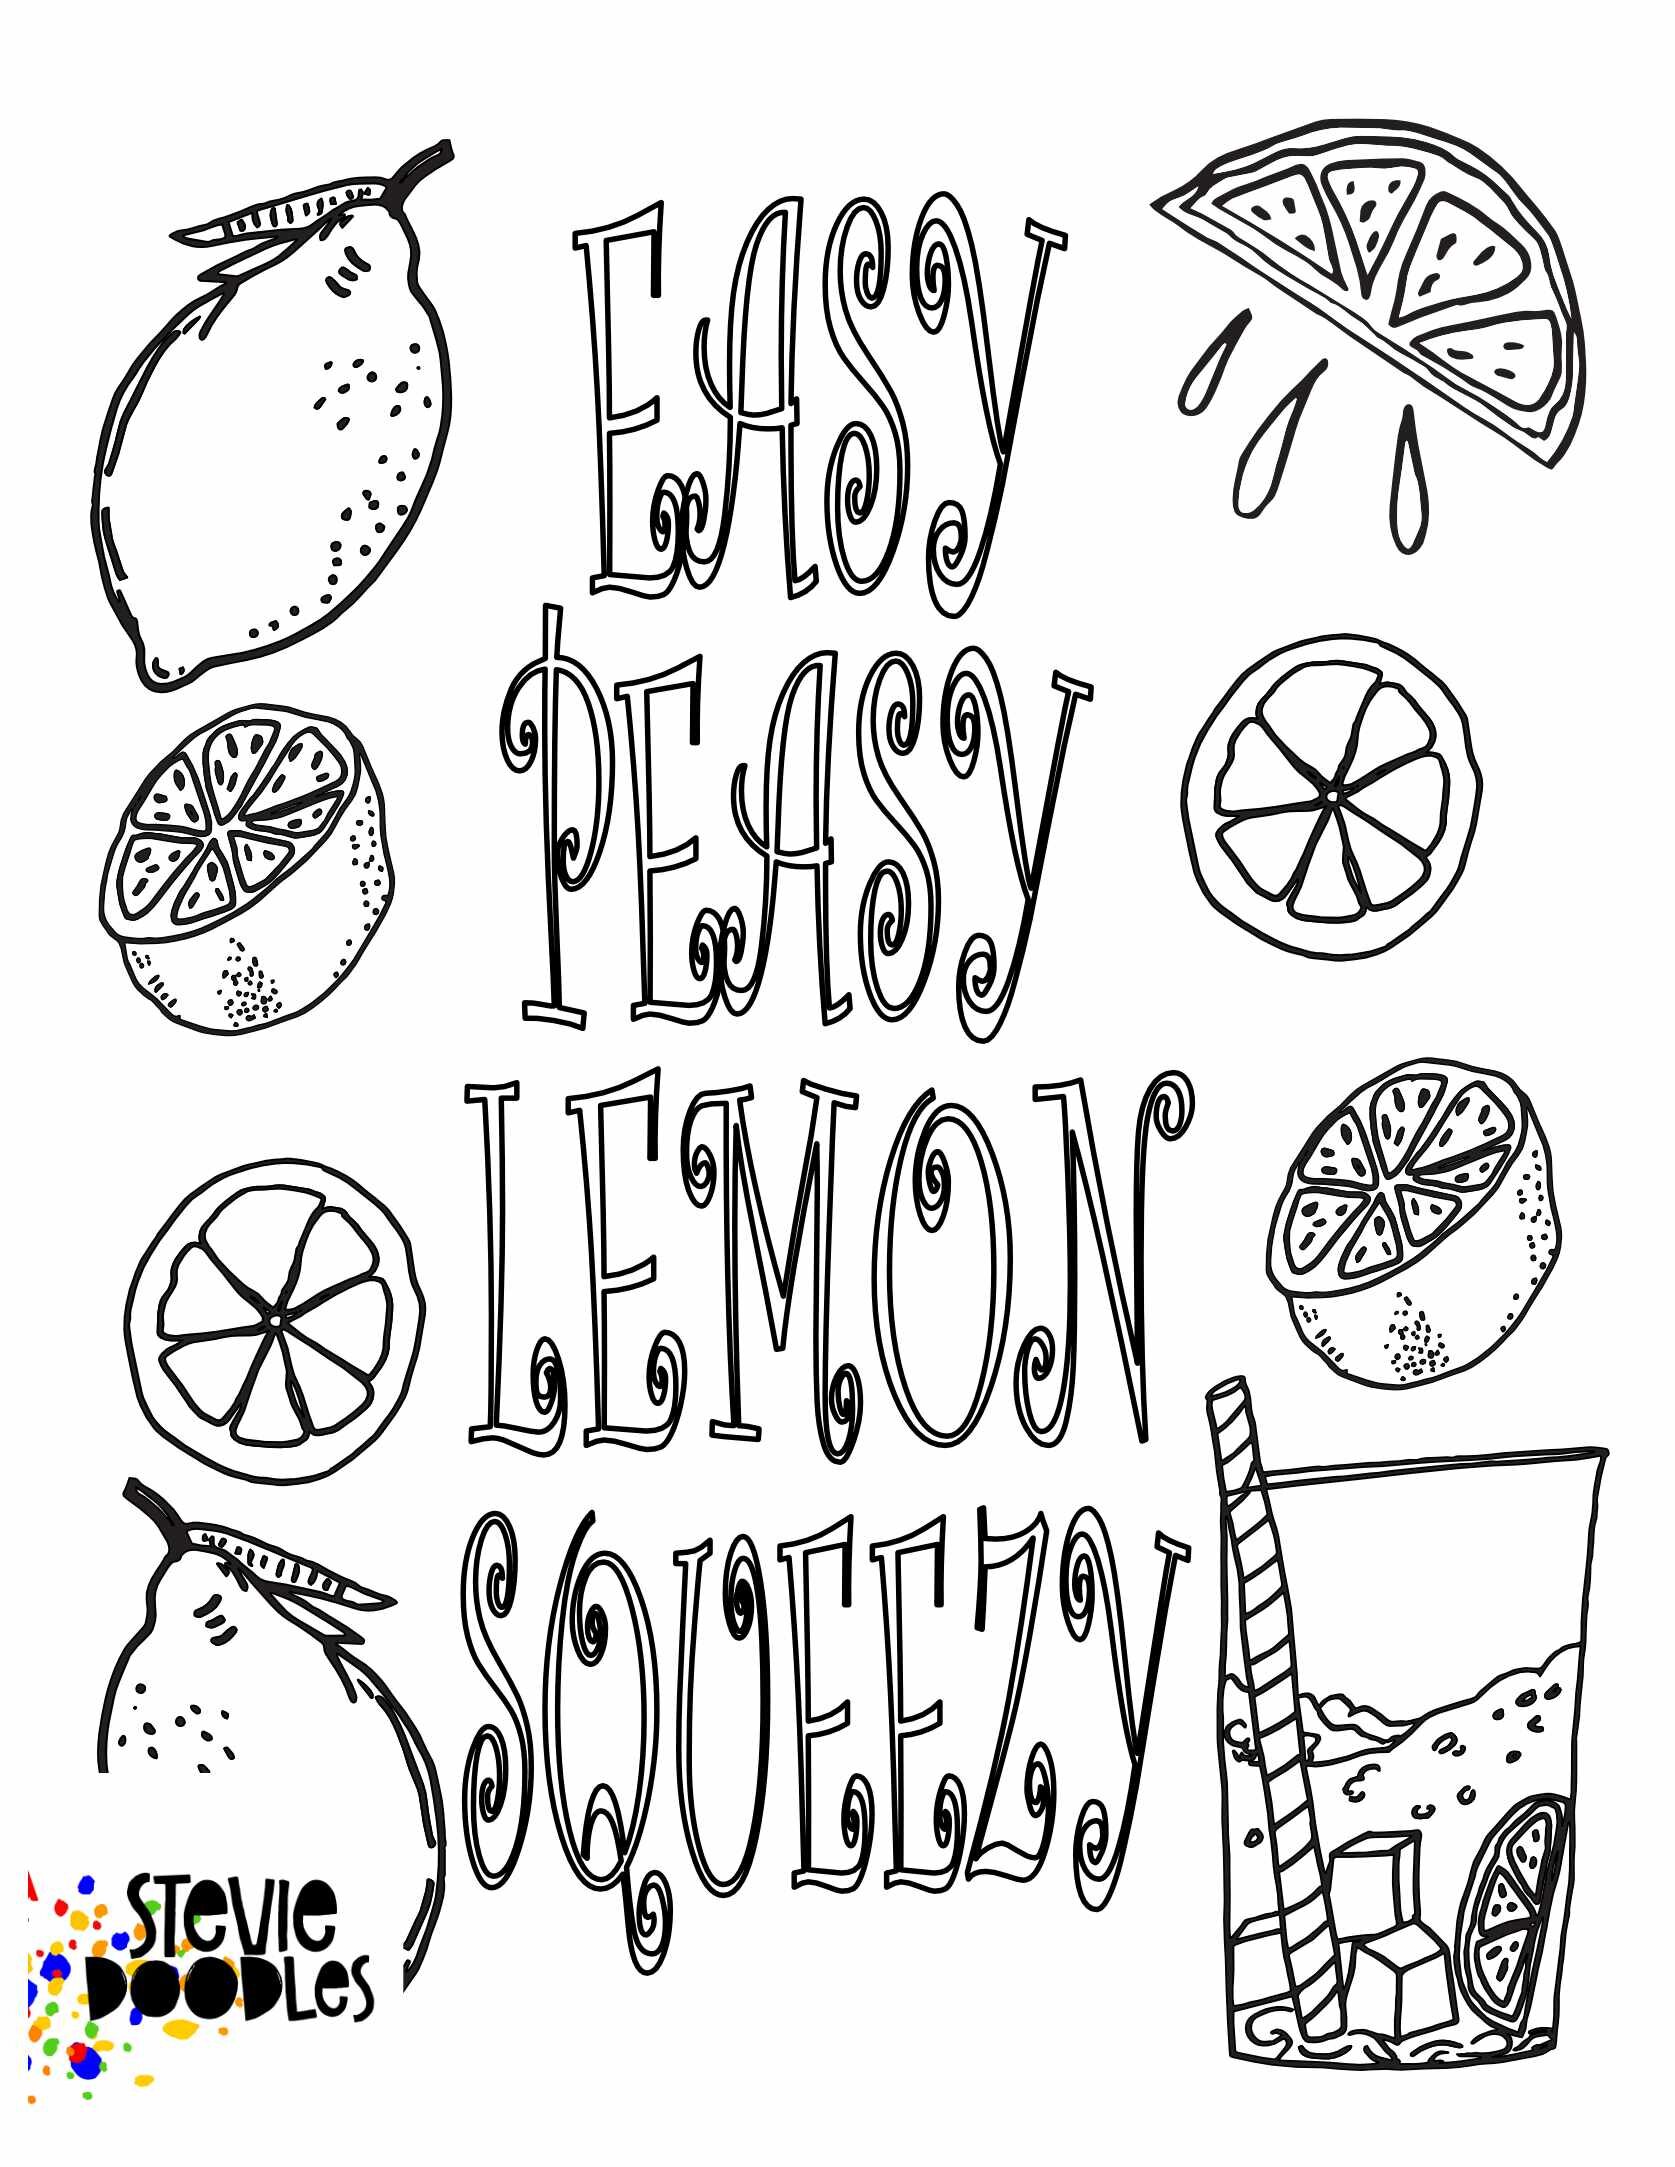 Easy Peasy Lemon Squeezy free printable